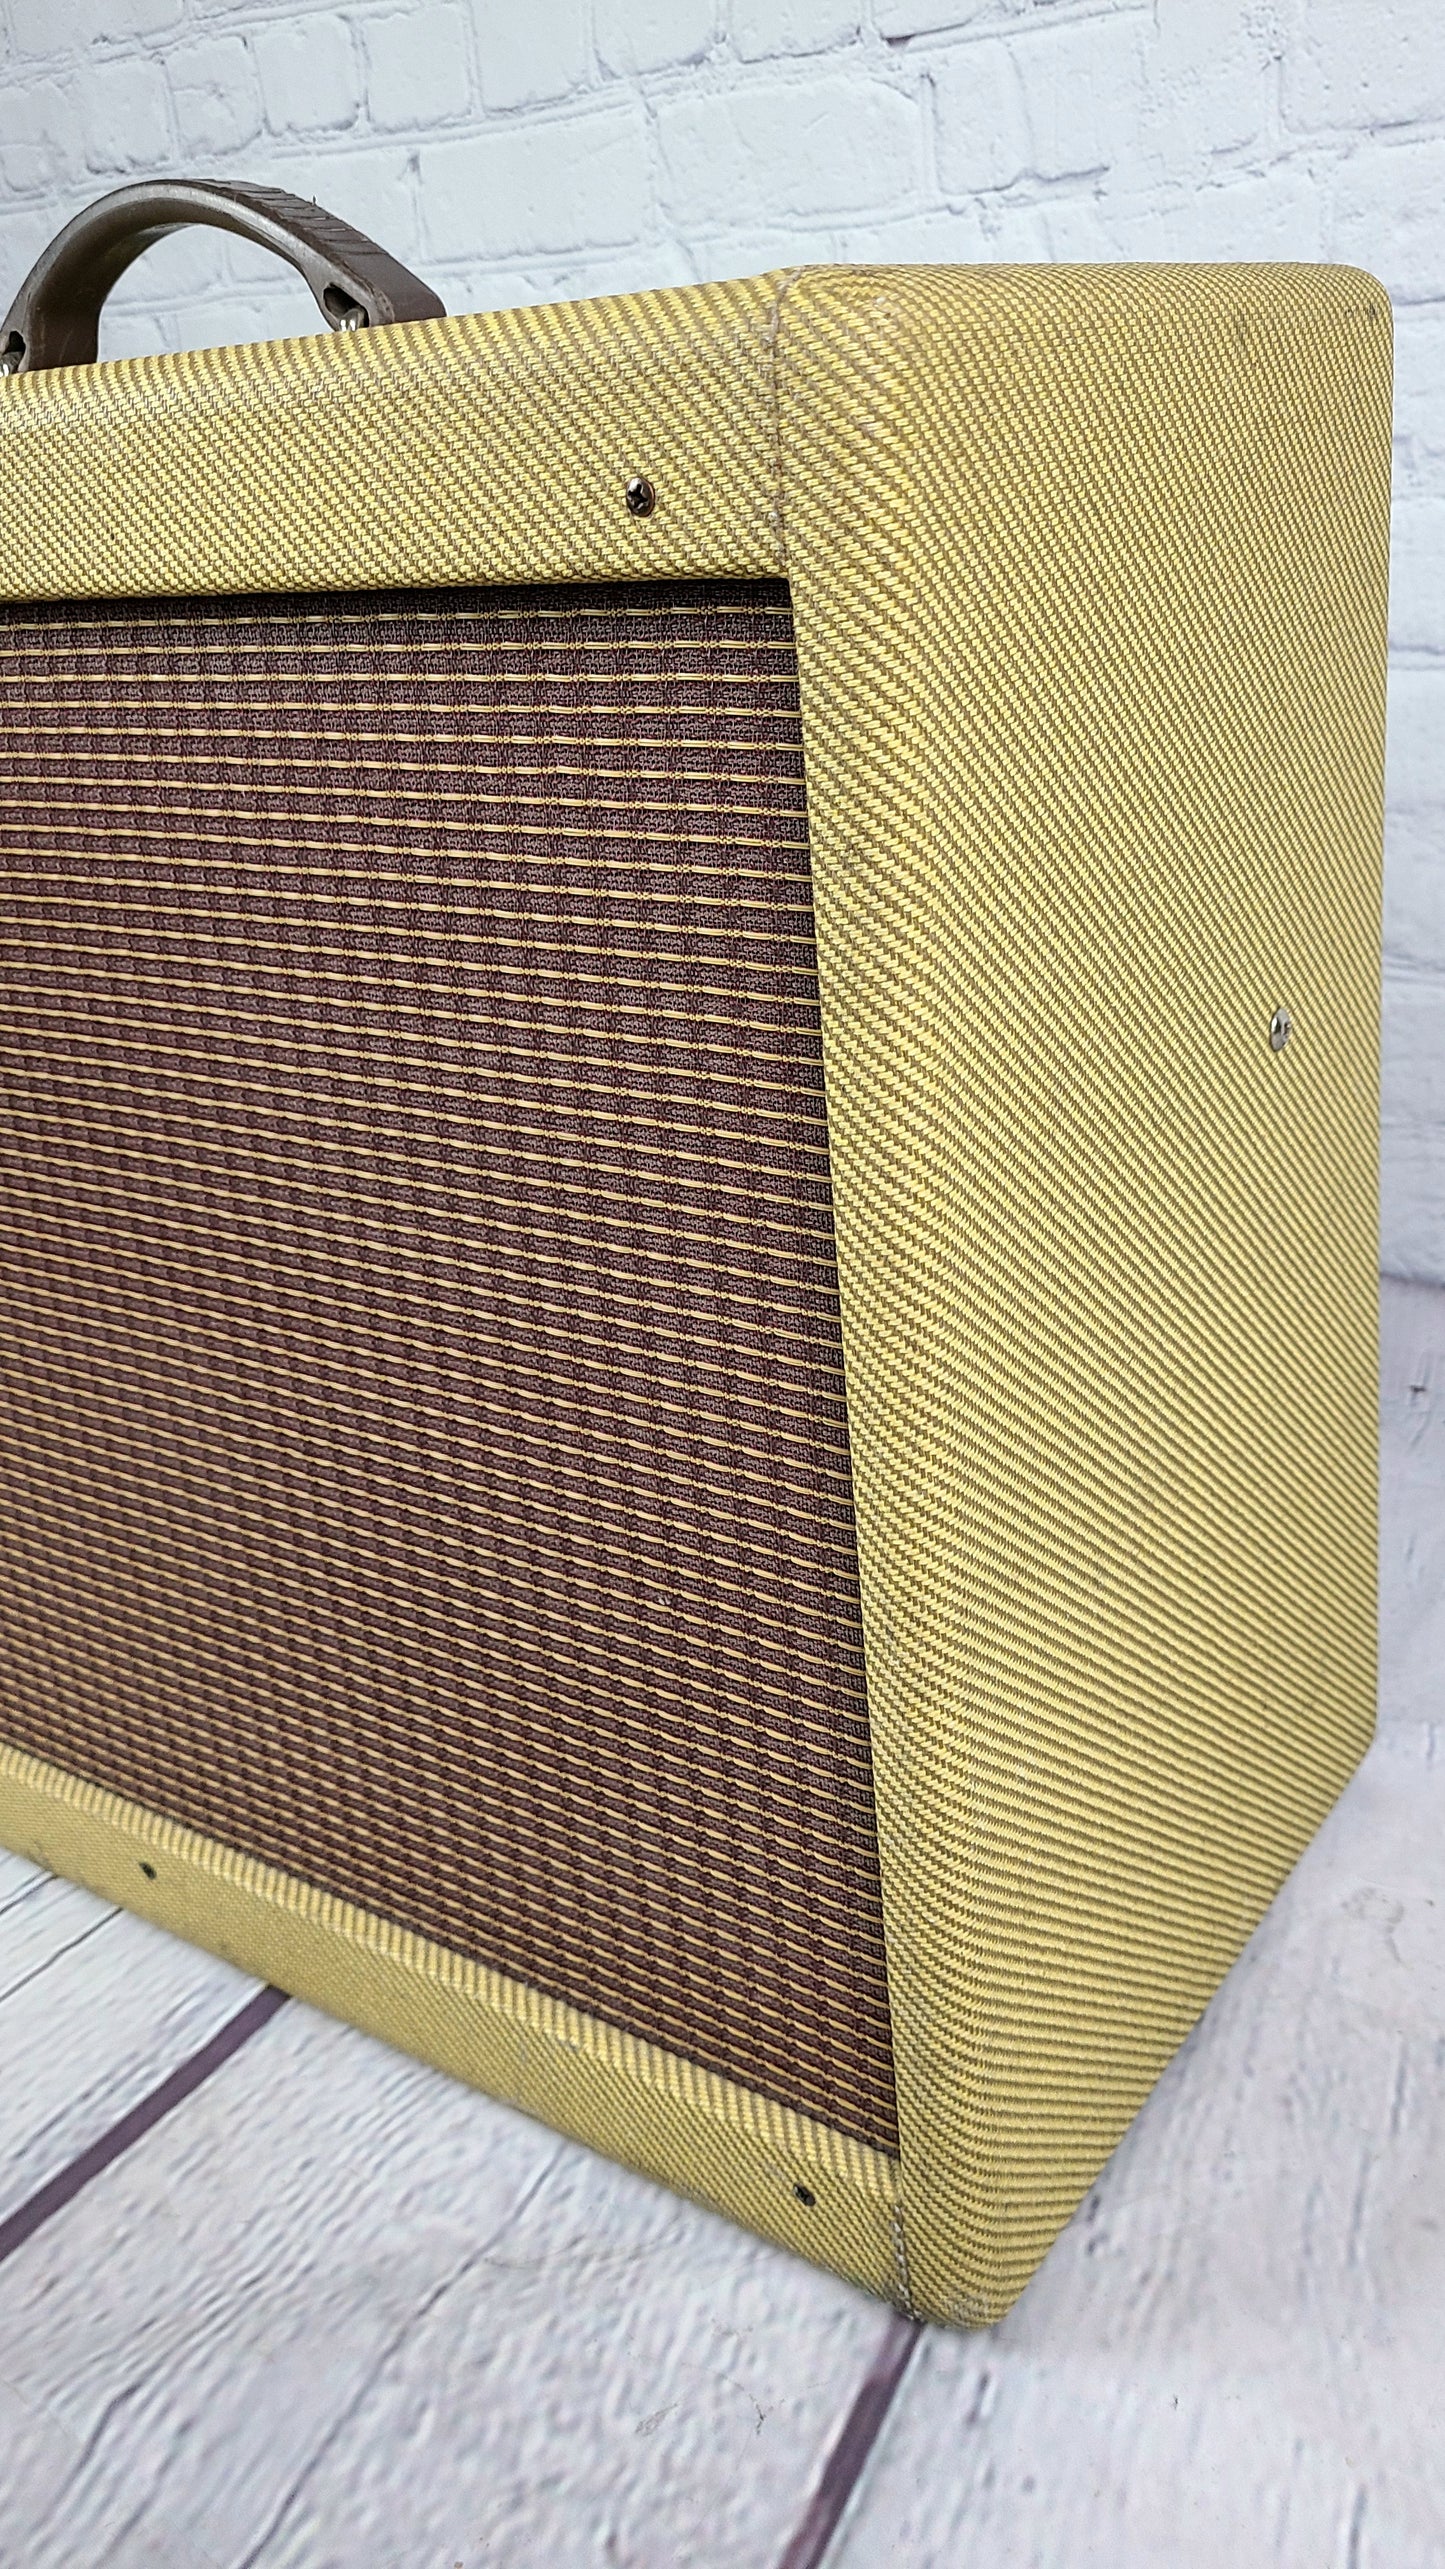 USED Fender Blues Deluxe USA Tweed Tube Amplifier 12" Speaker 40 Watt